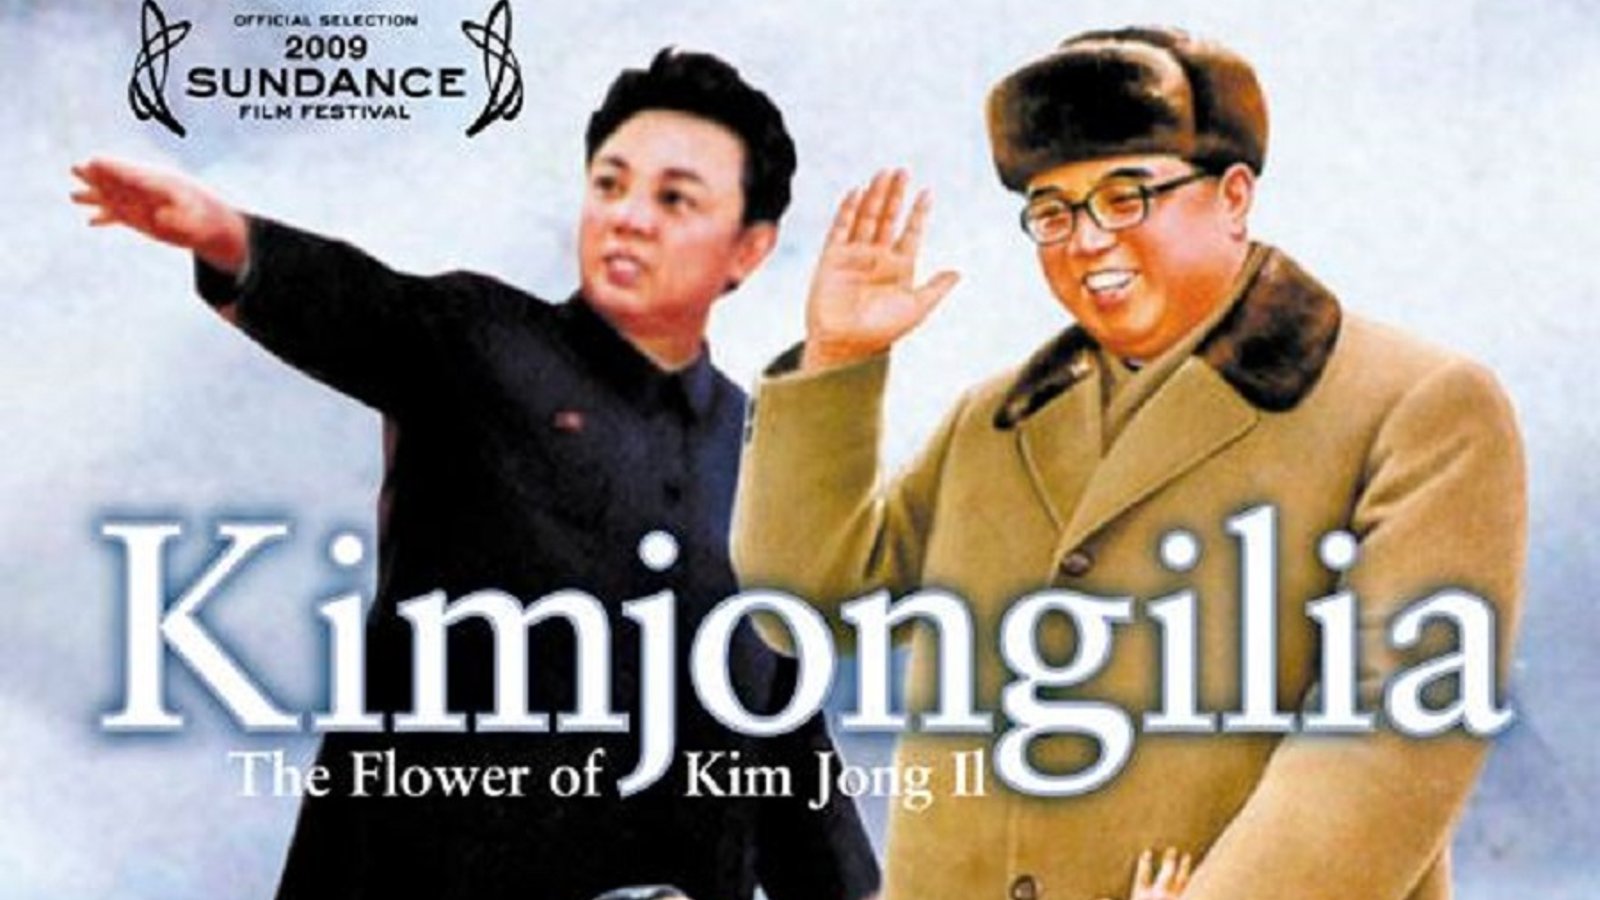 Kimjongilia